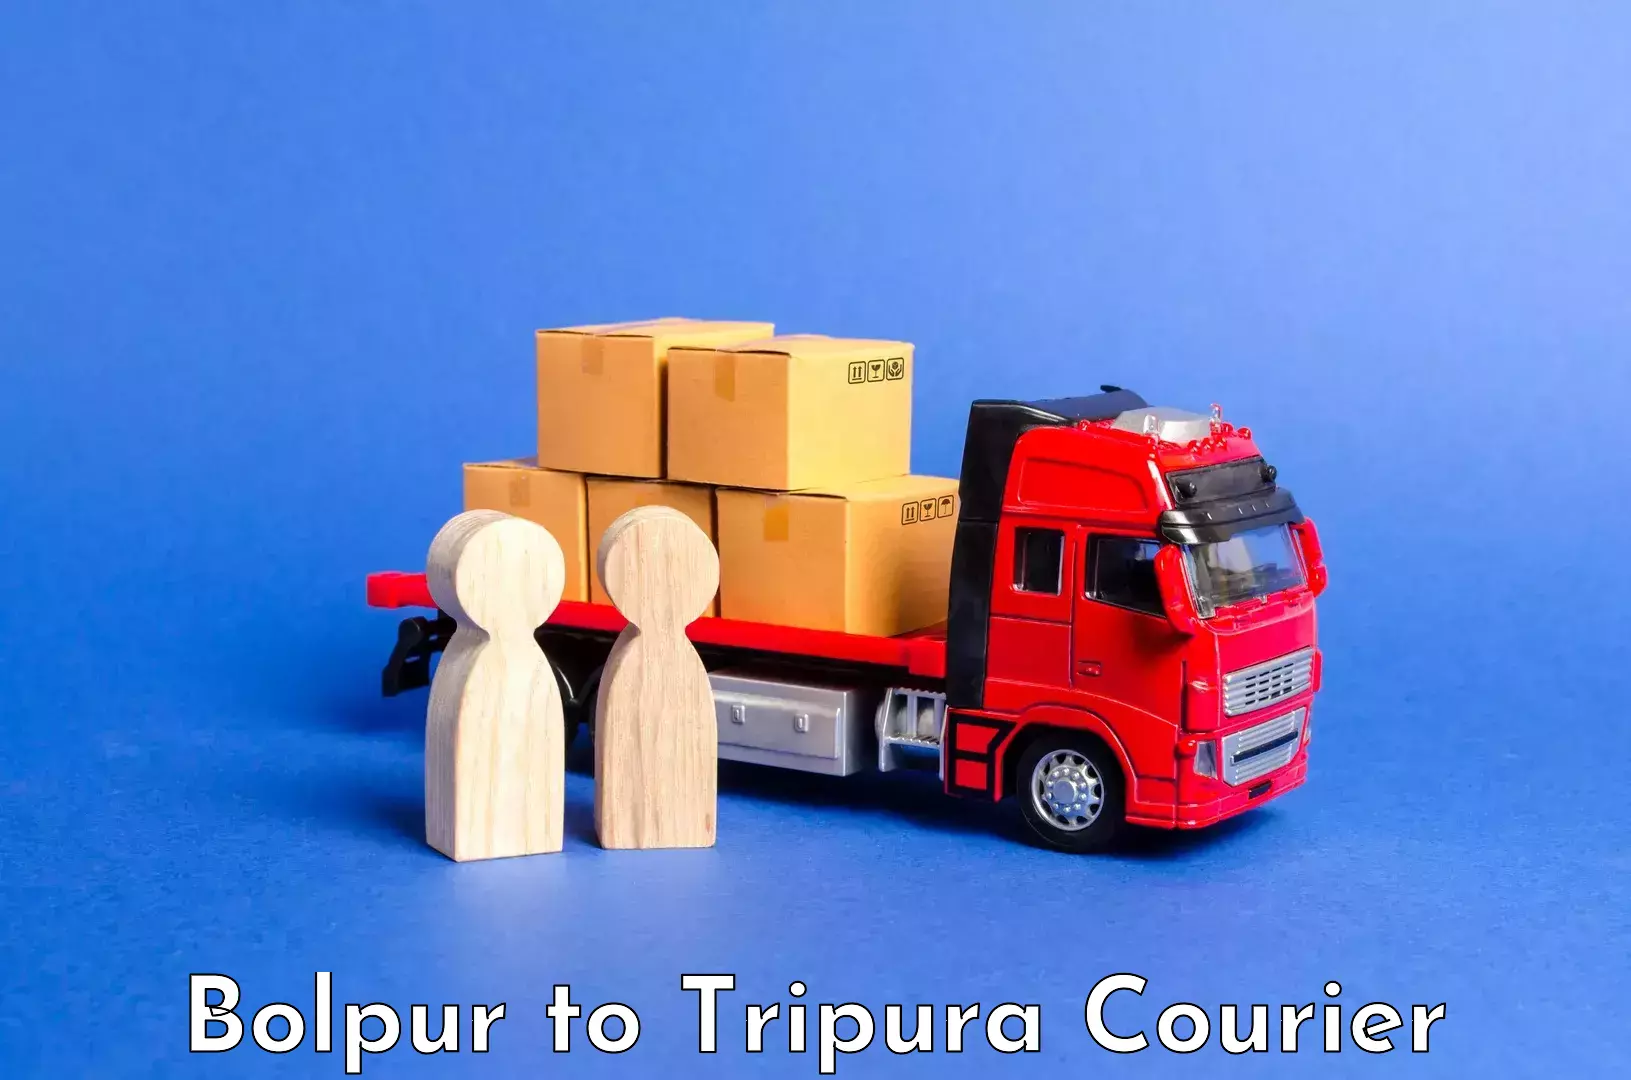 High-quality baggage shipment Bolpur to Udaipur Tripura